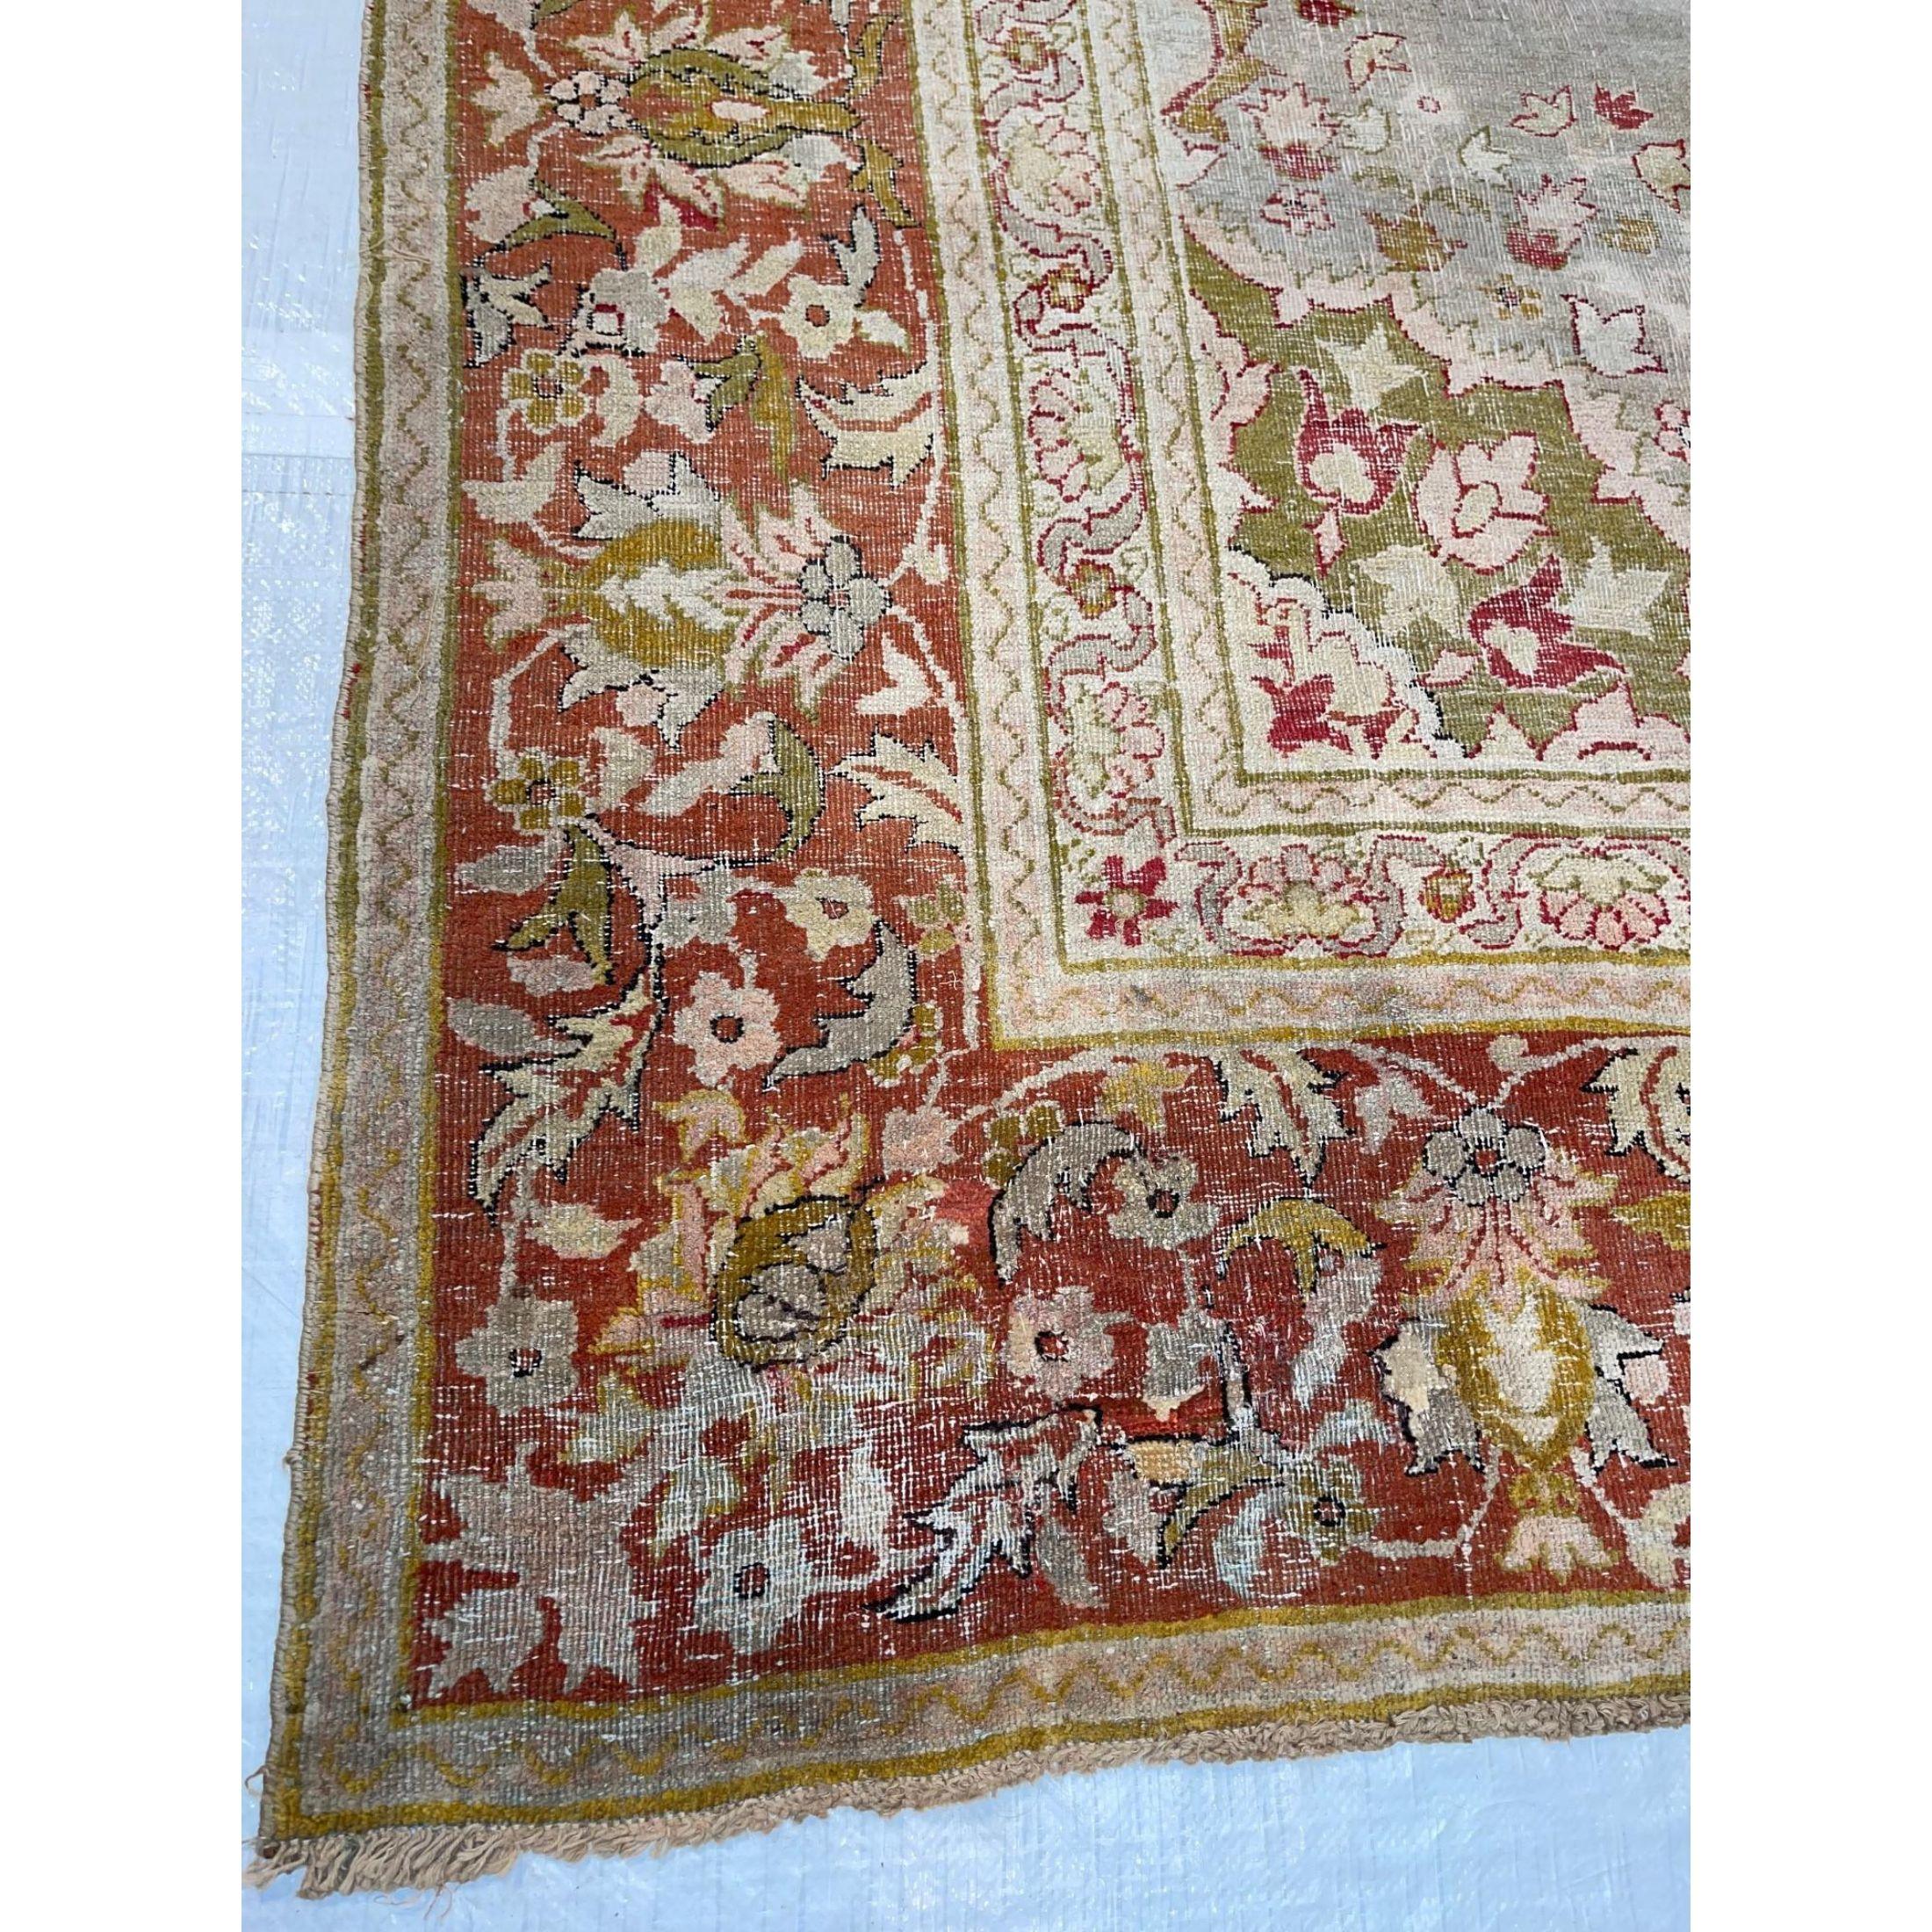 Pendant la période de domination coloniale sur l'Inde, les tapis d'Amritsar ont commencé à refléter les influences occidentales dans leur conception. Les artisans du nord de l'Inde ont saisi l'occasion de profiter de la demande croissante de tapis